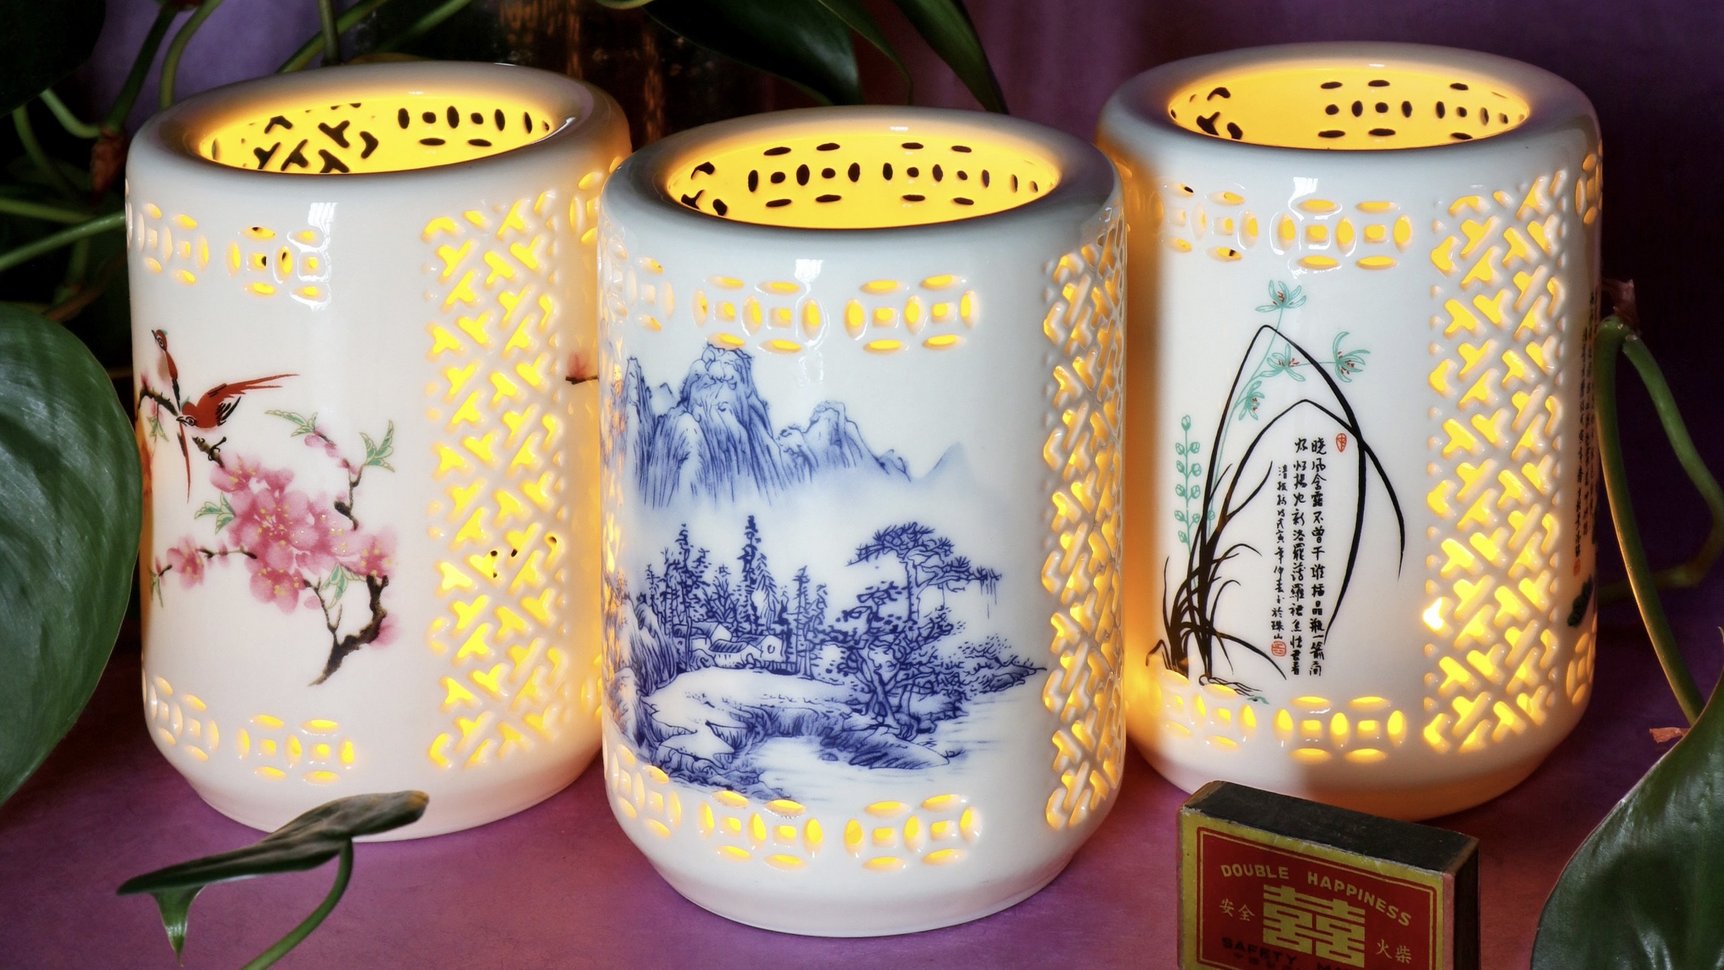 Three ceramic tea light holders